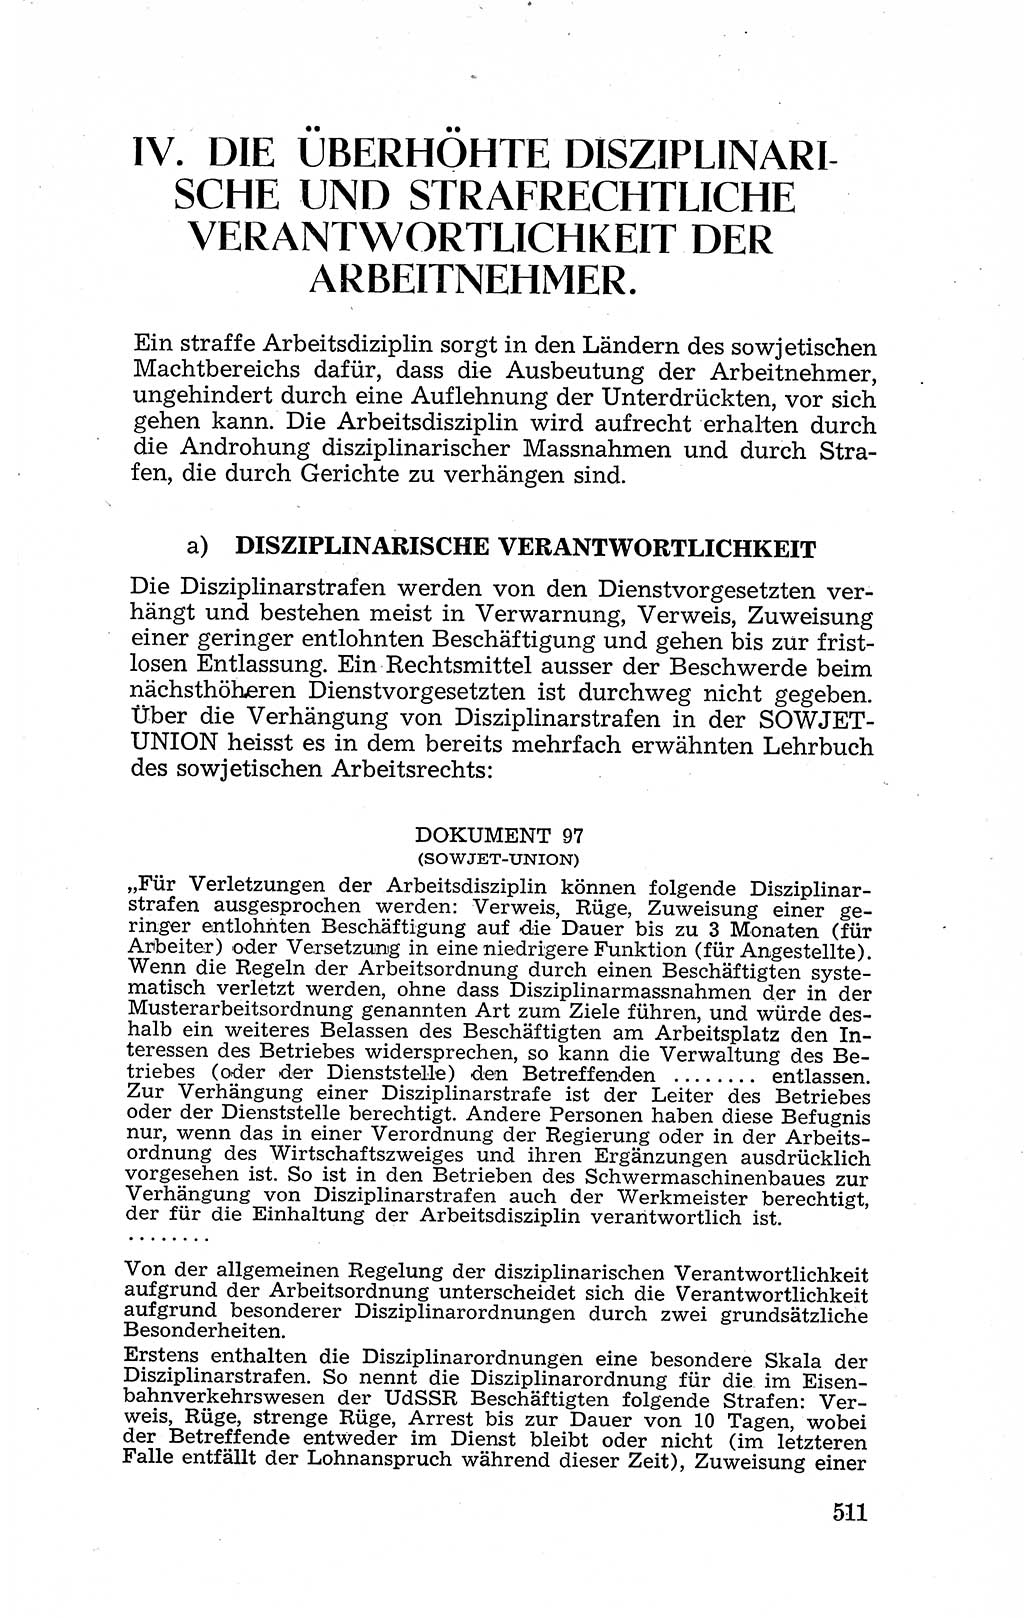 Recht in Fesseln, Dokumente, Internationale Juristen-Kommission [Bundesrepublik Deutschland (BRD)] 1955, Seite 511 (R. Dok. IJK BRD 1955, S. 511)